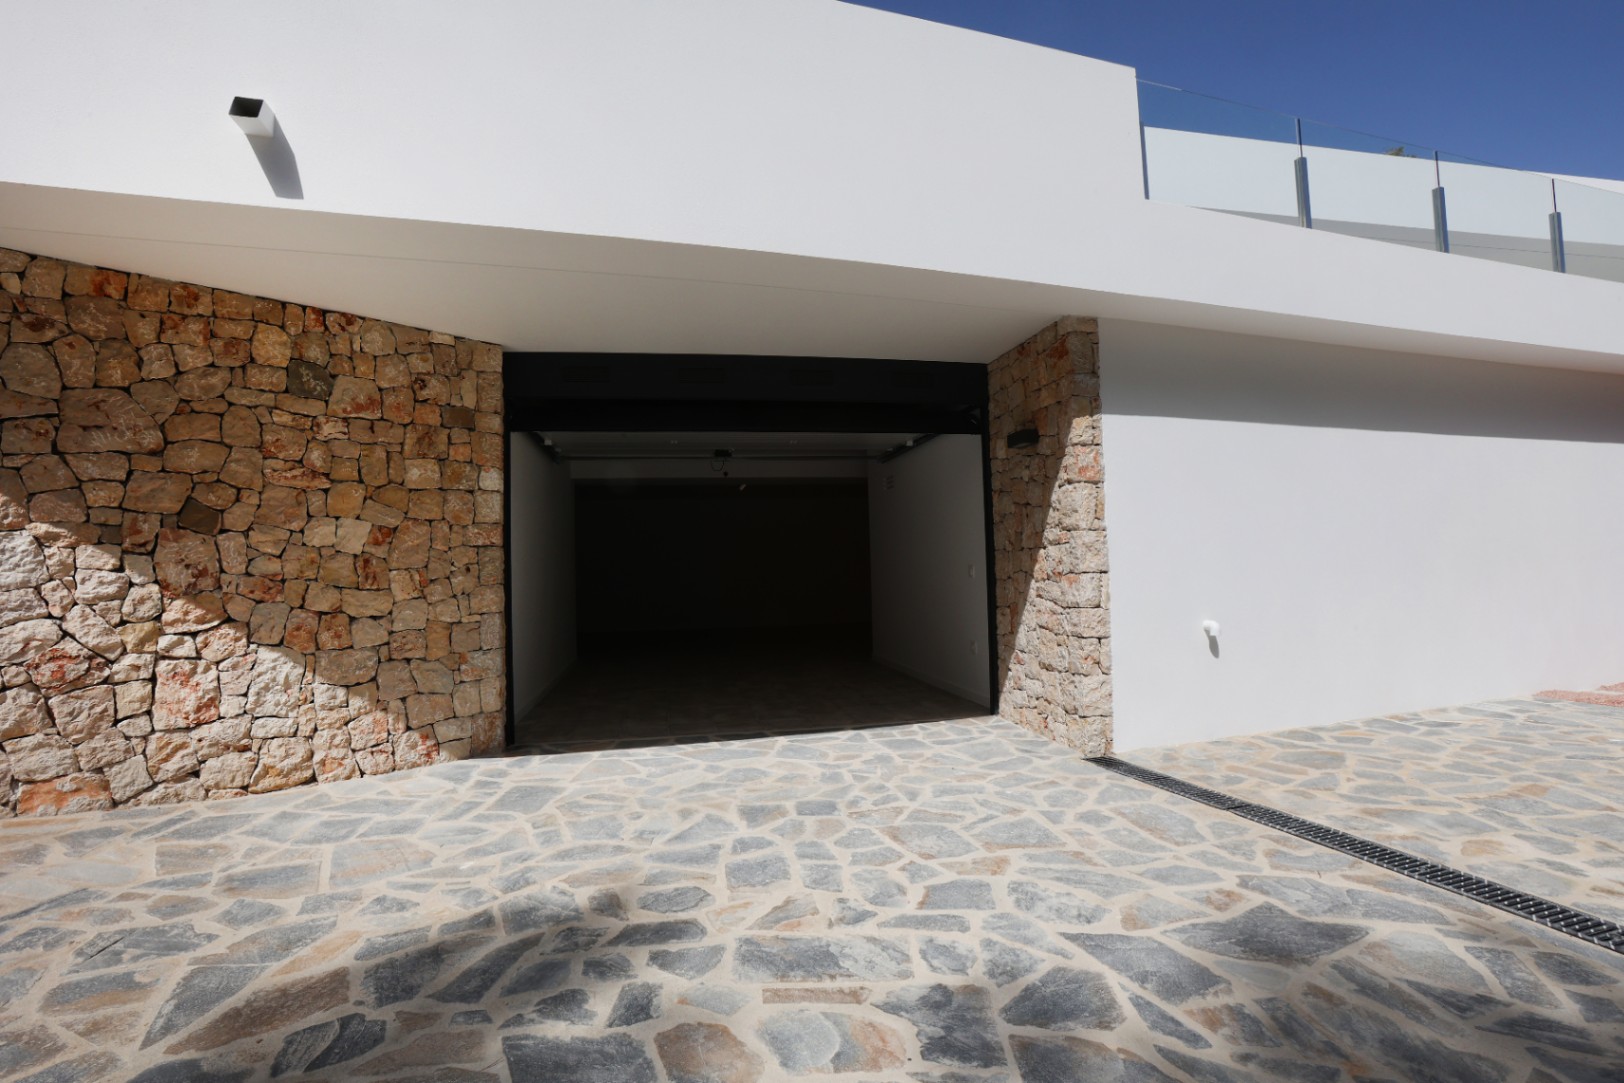 Descubre esta impresionante villa moderna recientemente terminada en Benissa